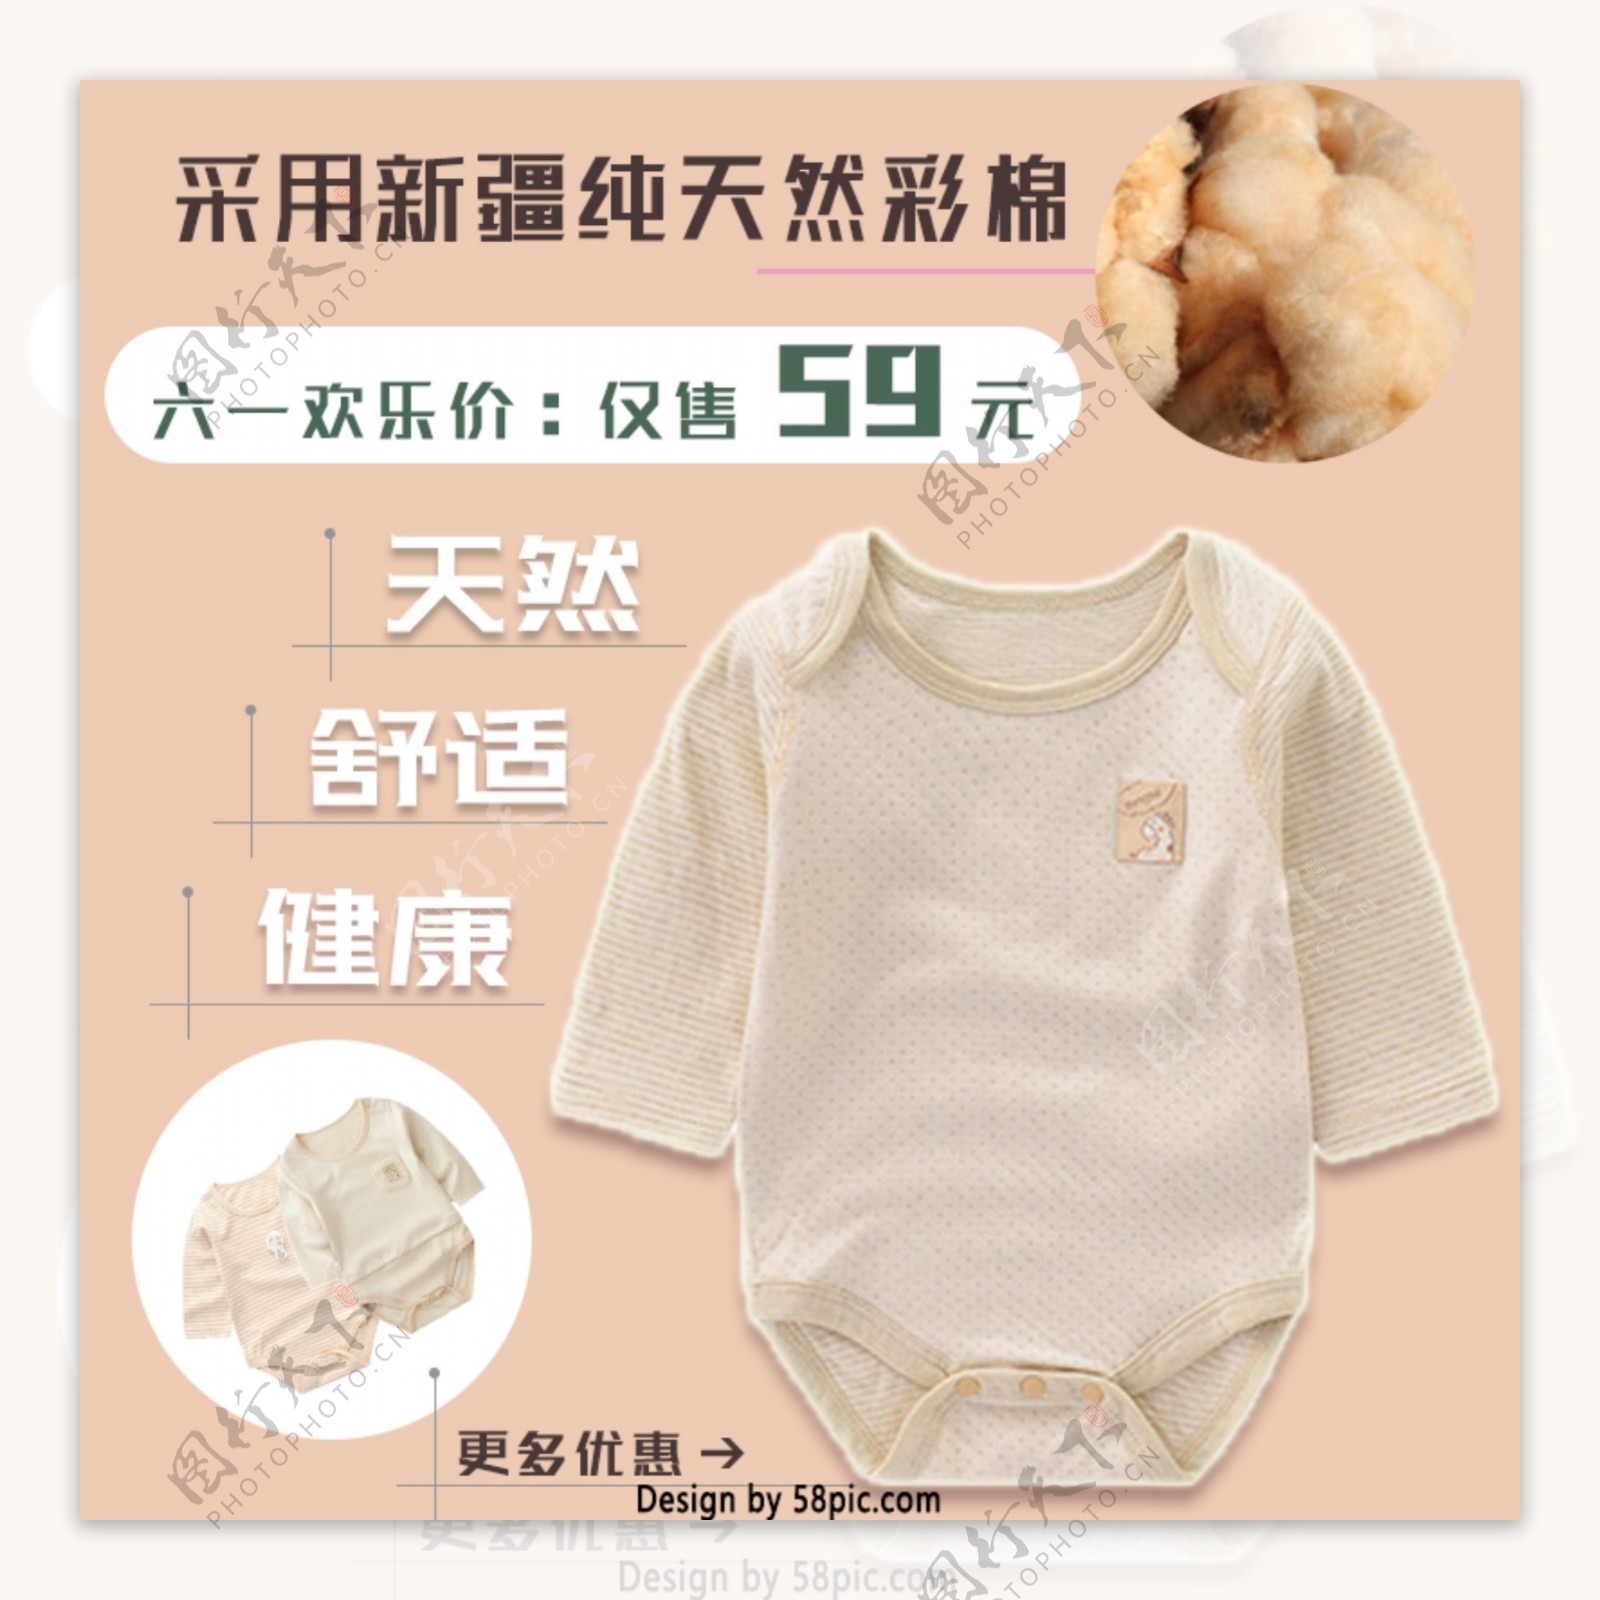 六一儿童节纯彩棉宝宝衣服优惠活动主图